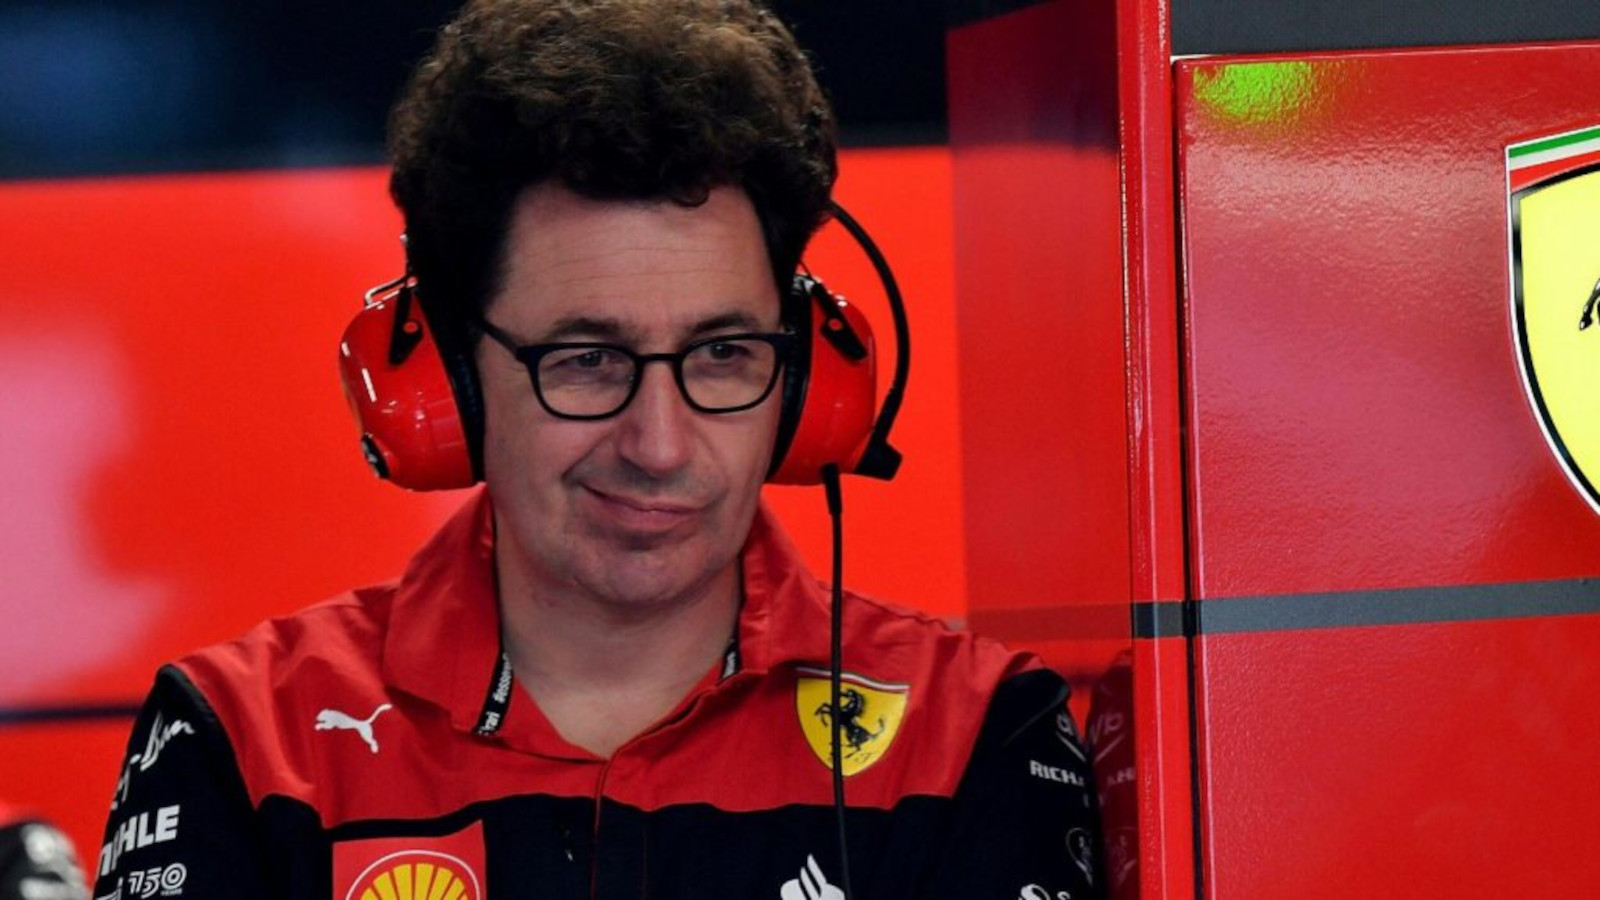 El director del equipo Ferrari, Mattia Binotto, se ve excéntrico en el garaje con audífonos.Montréal junio 2022